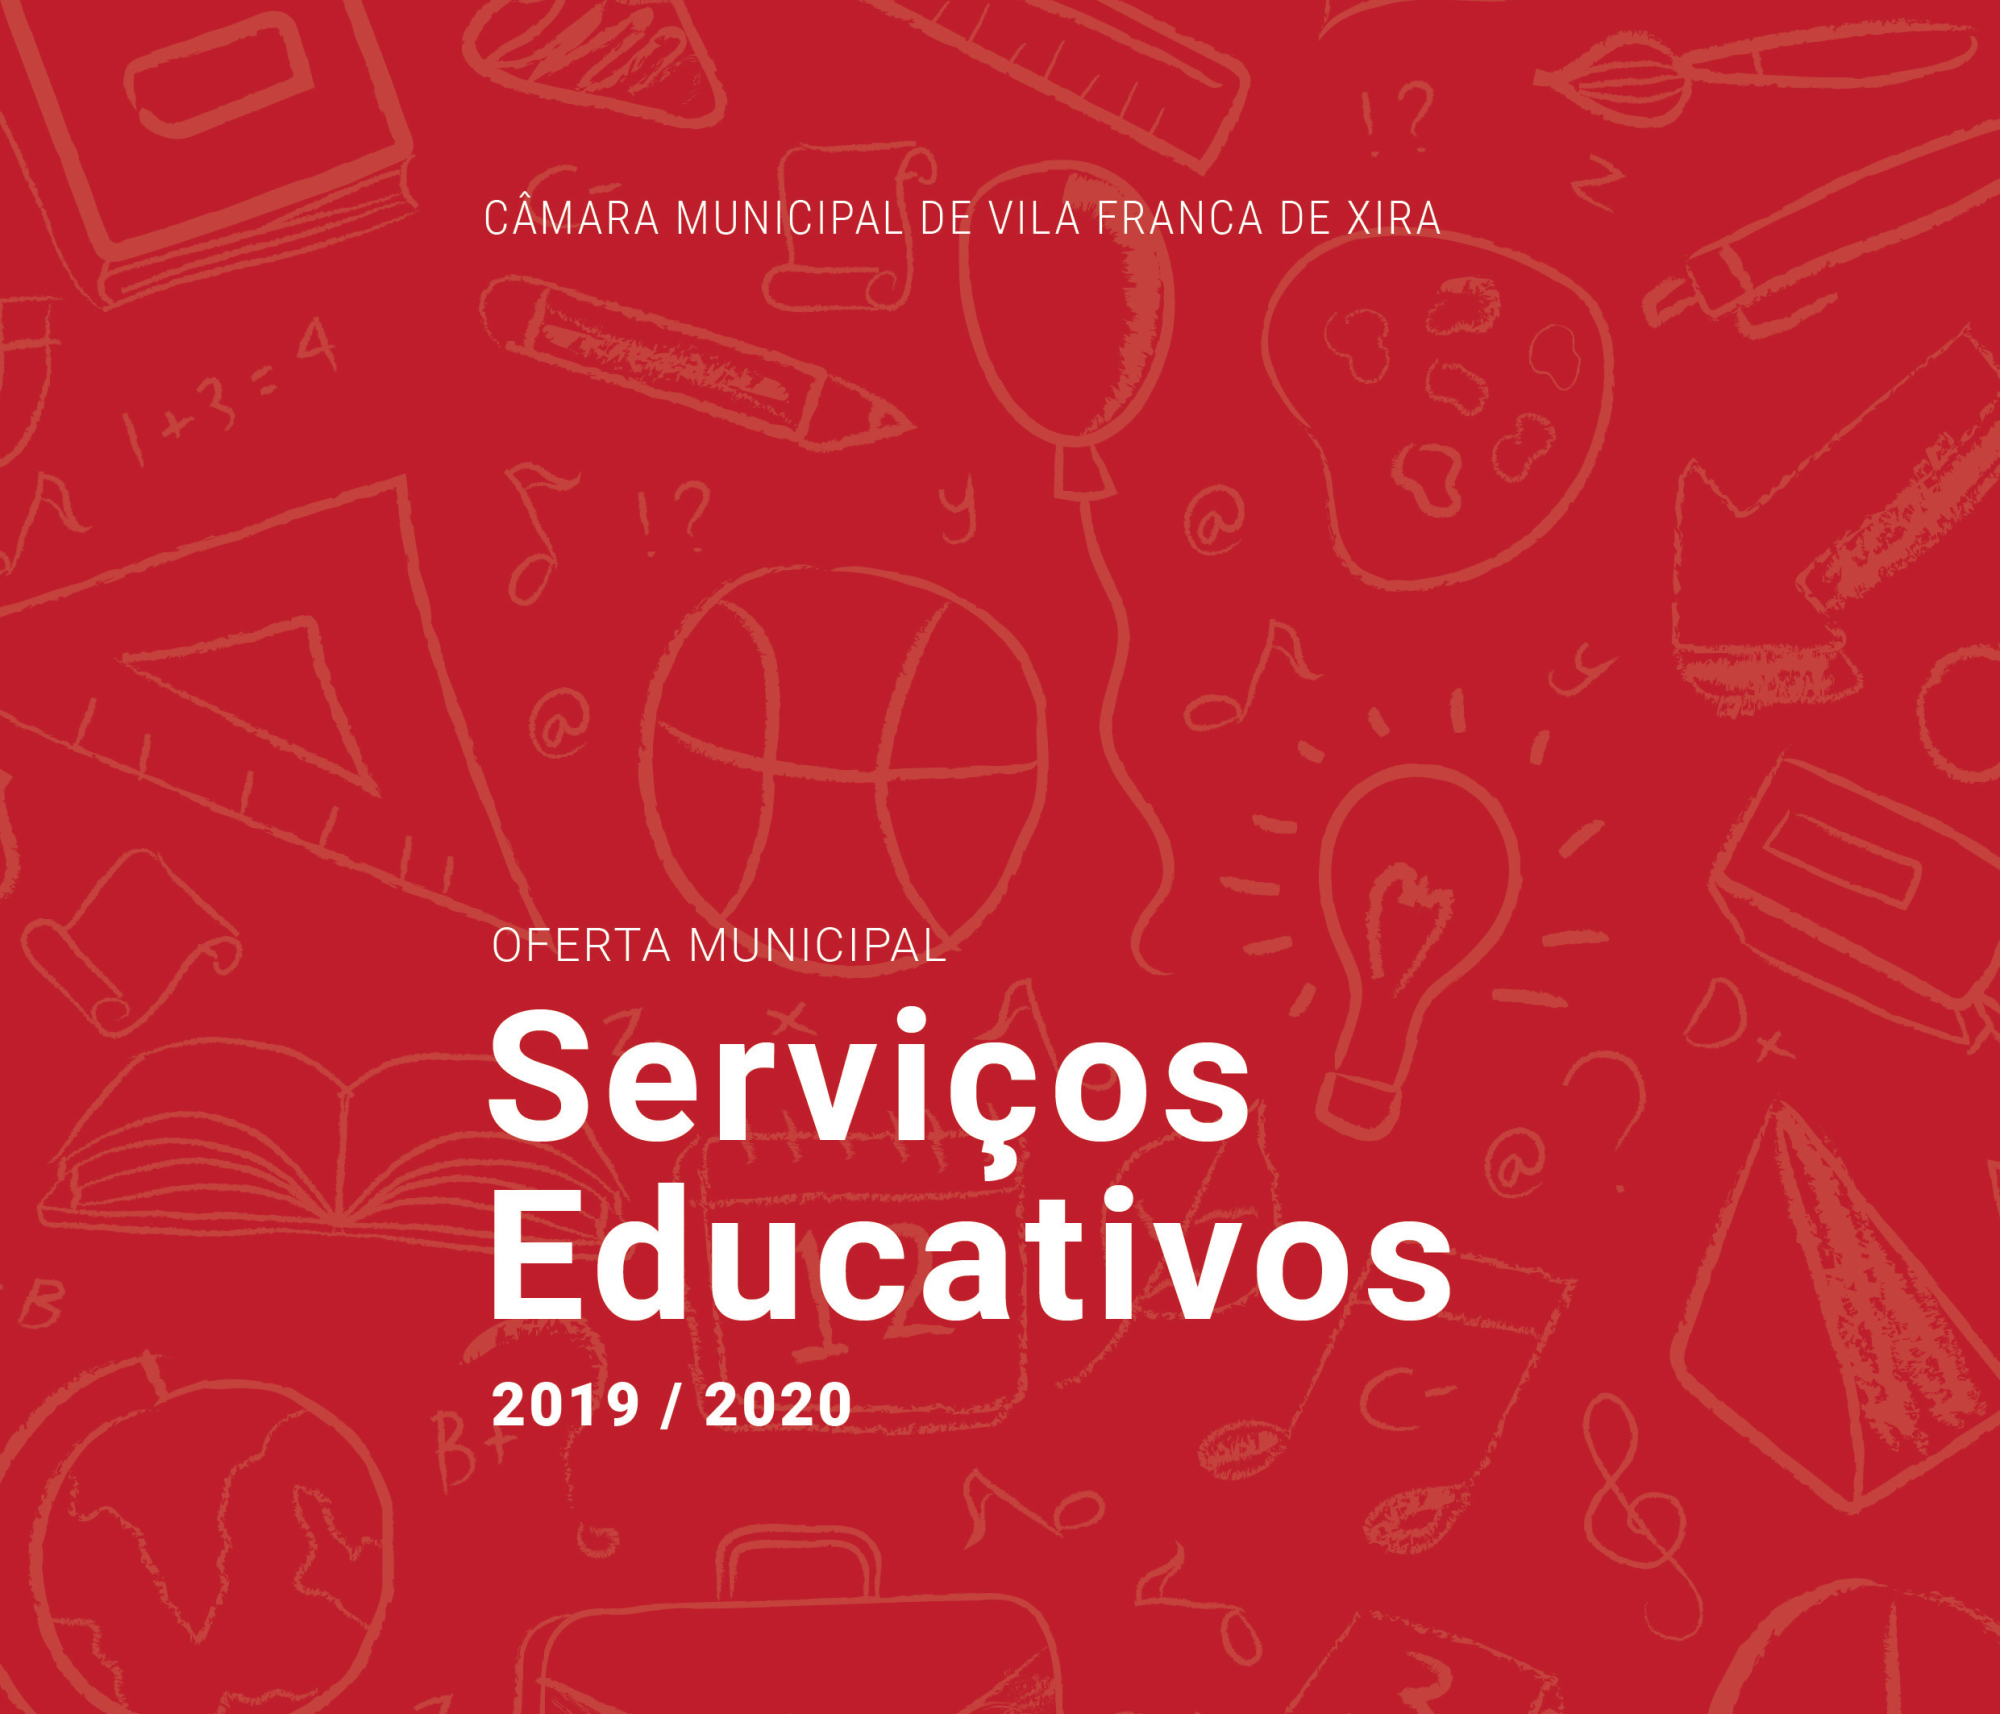 Serviços Educativos Municipais 2019/2020